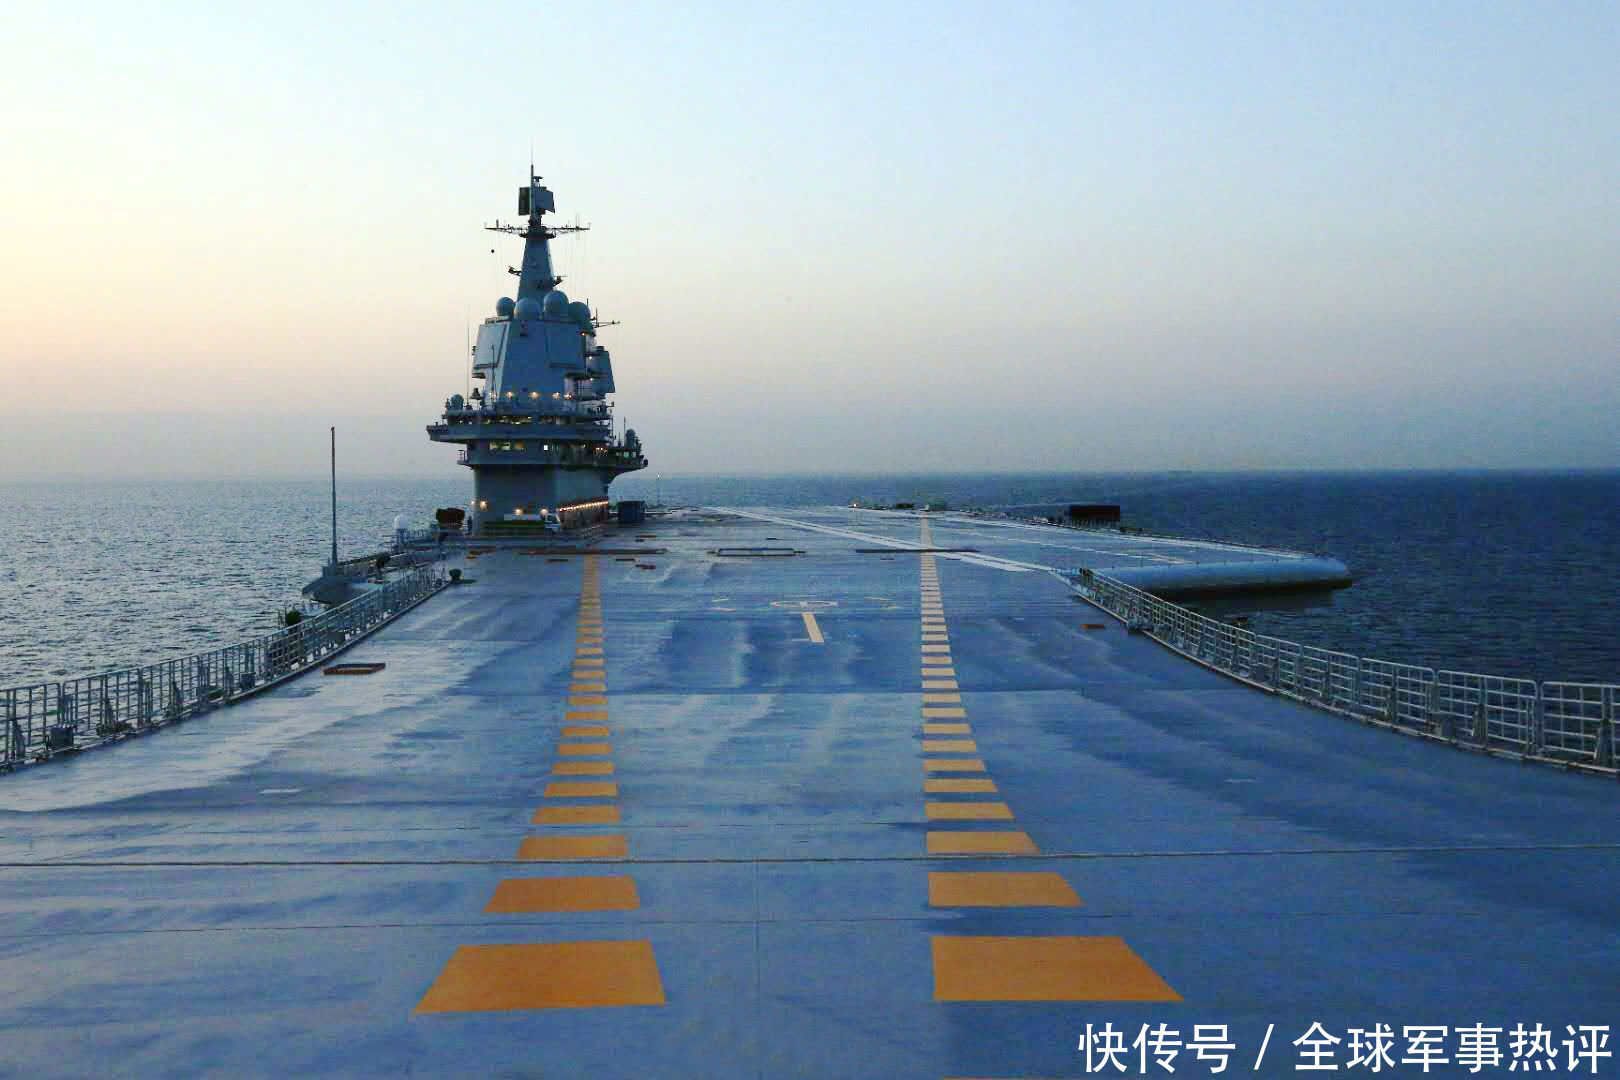 山东舰返航之际,中国迈出空天航母第一步,美